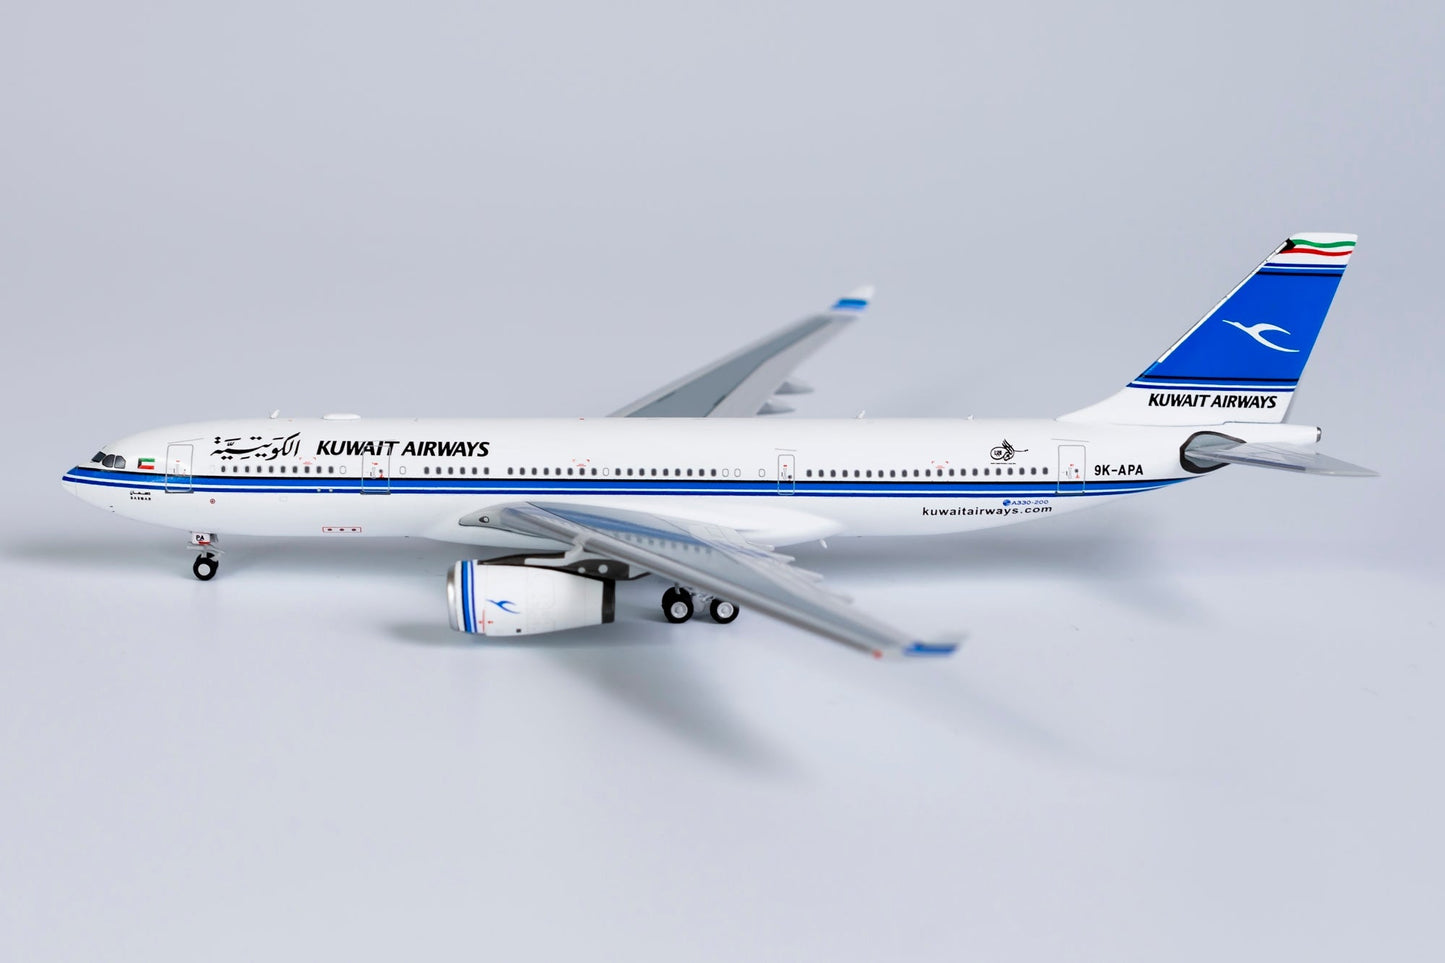 *1/400 Kuwait Airways A330-200 NG Models 61039